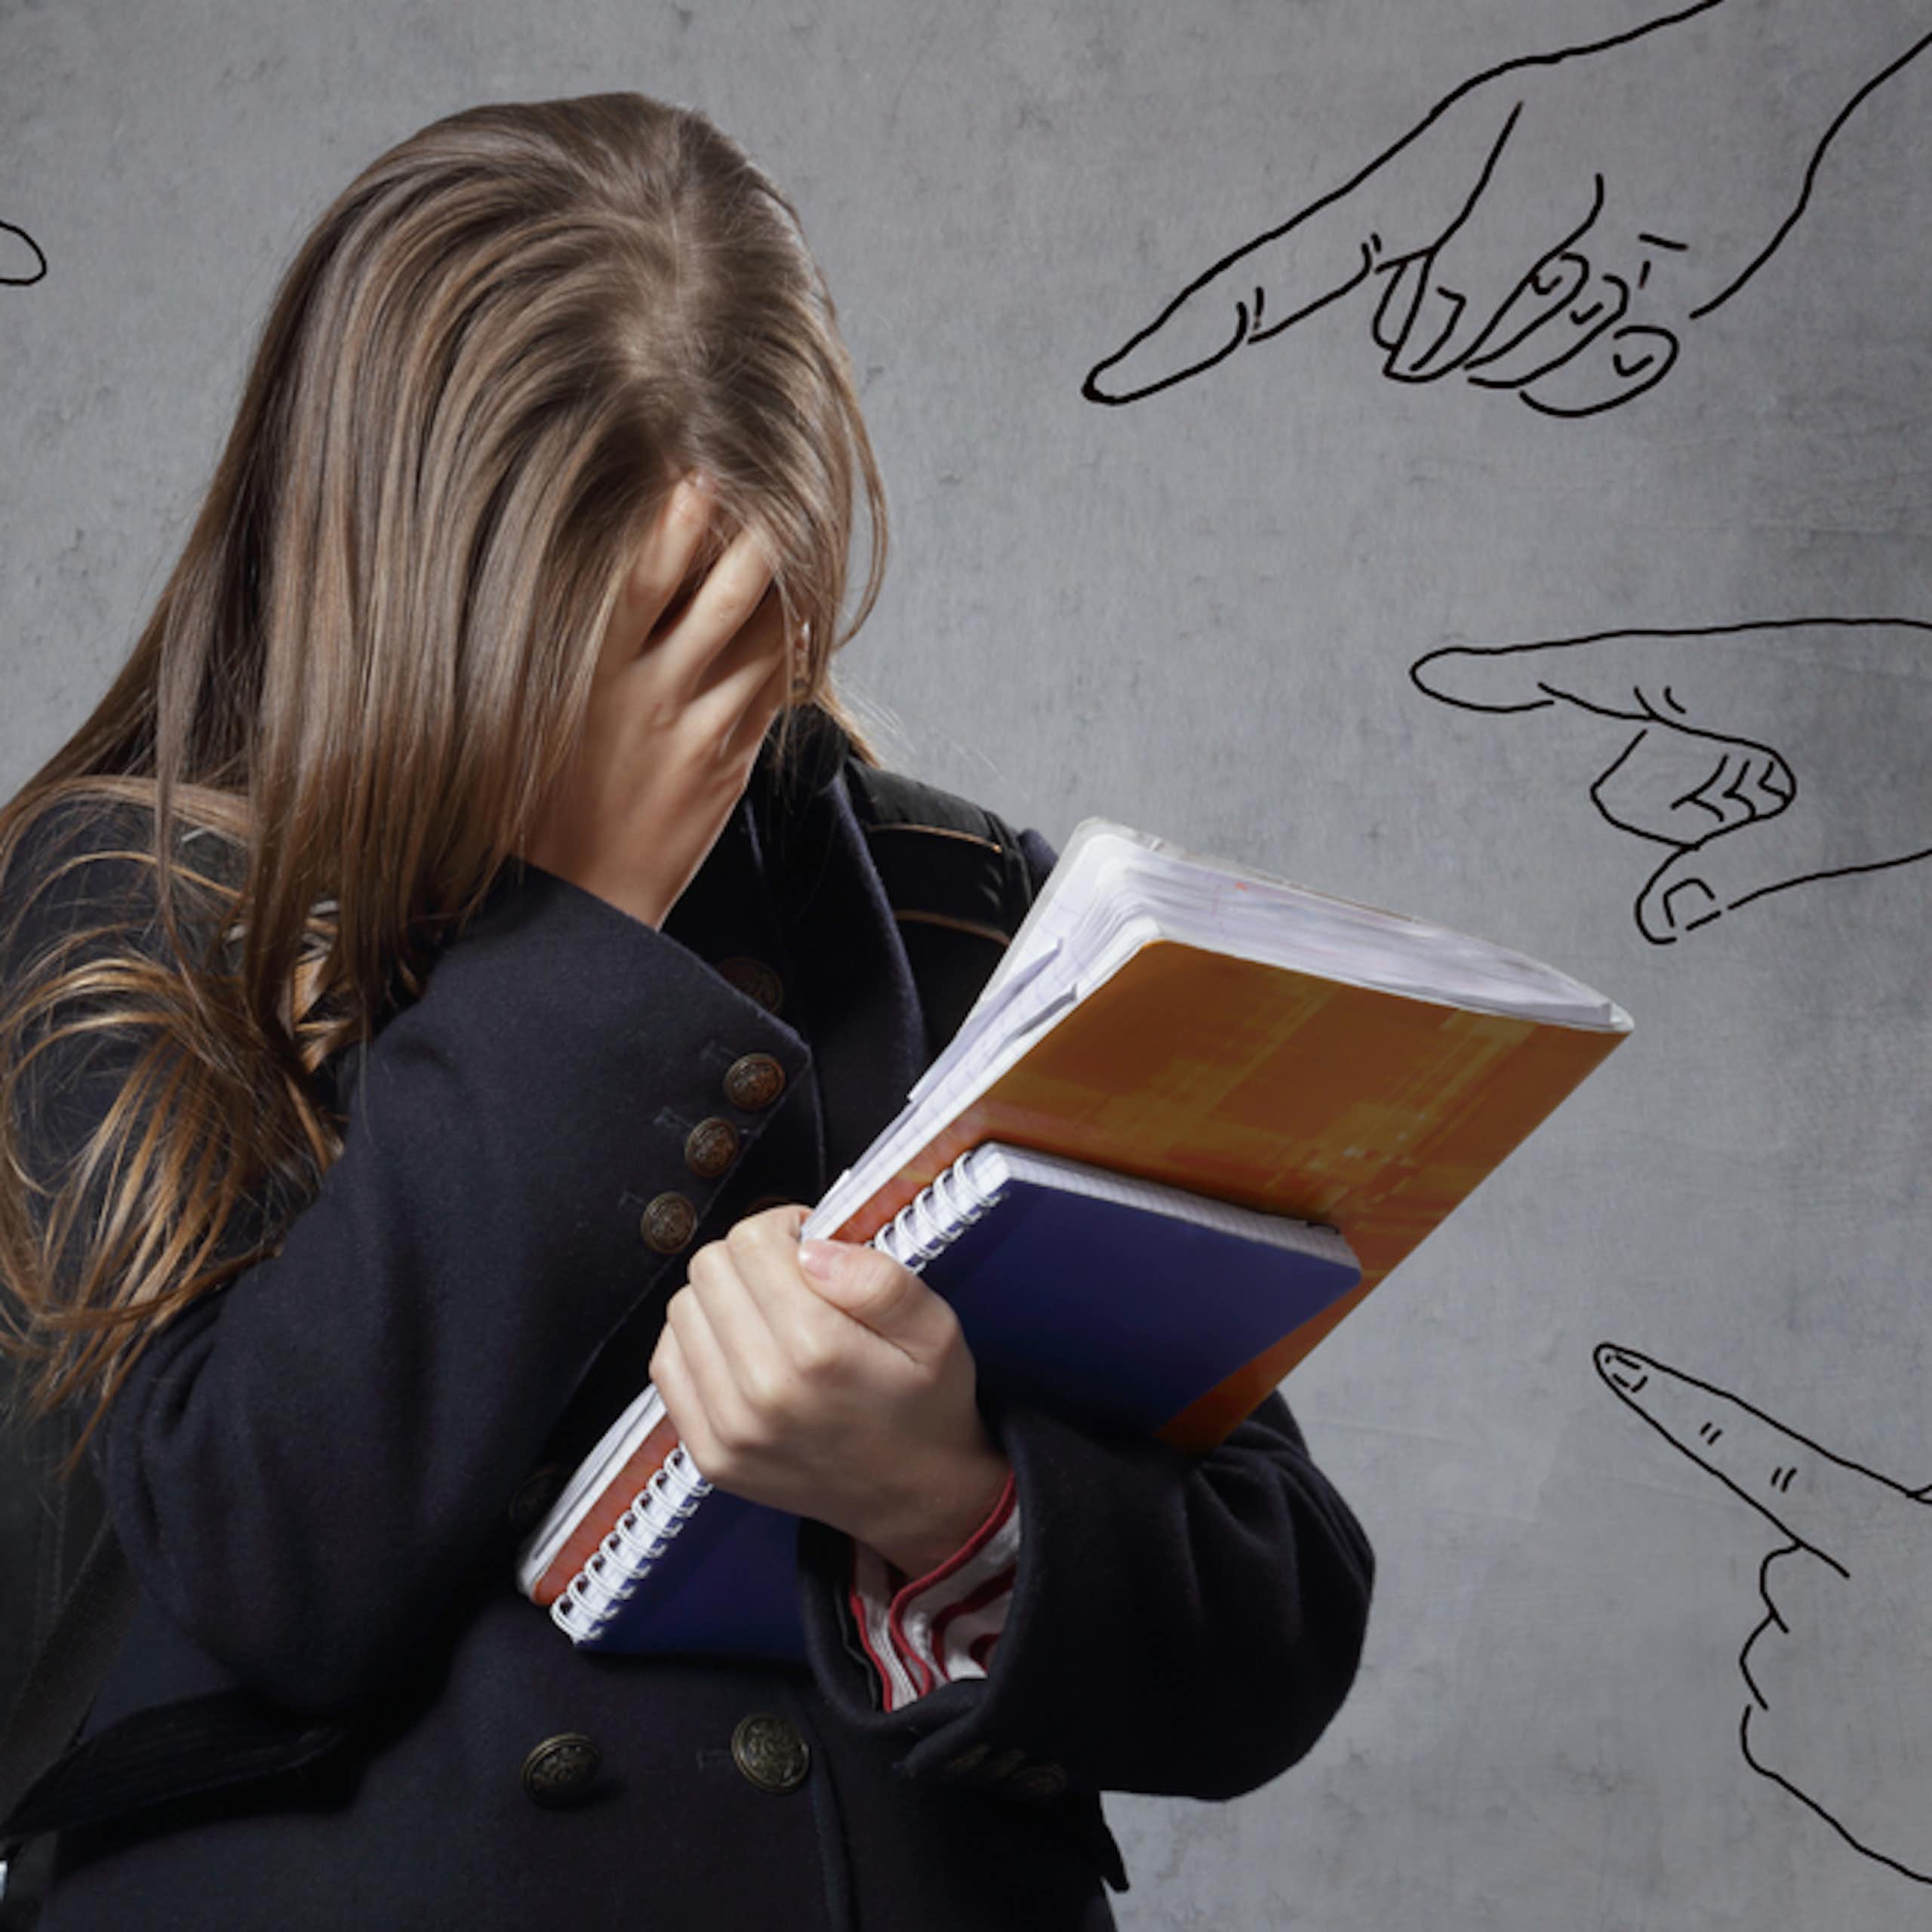 Adolescente solitaire en pleurs  avec des dessins de doigts pointés symbolisant le harcèlement